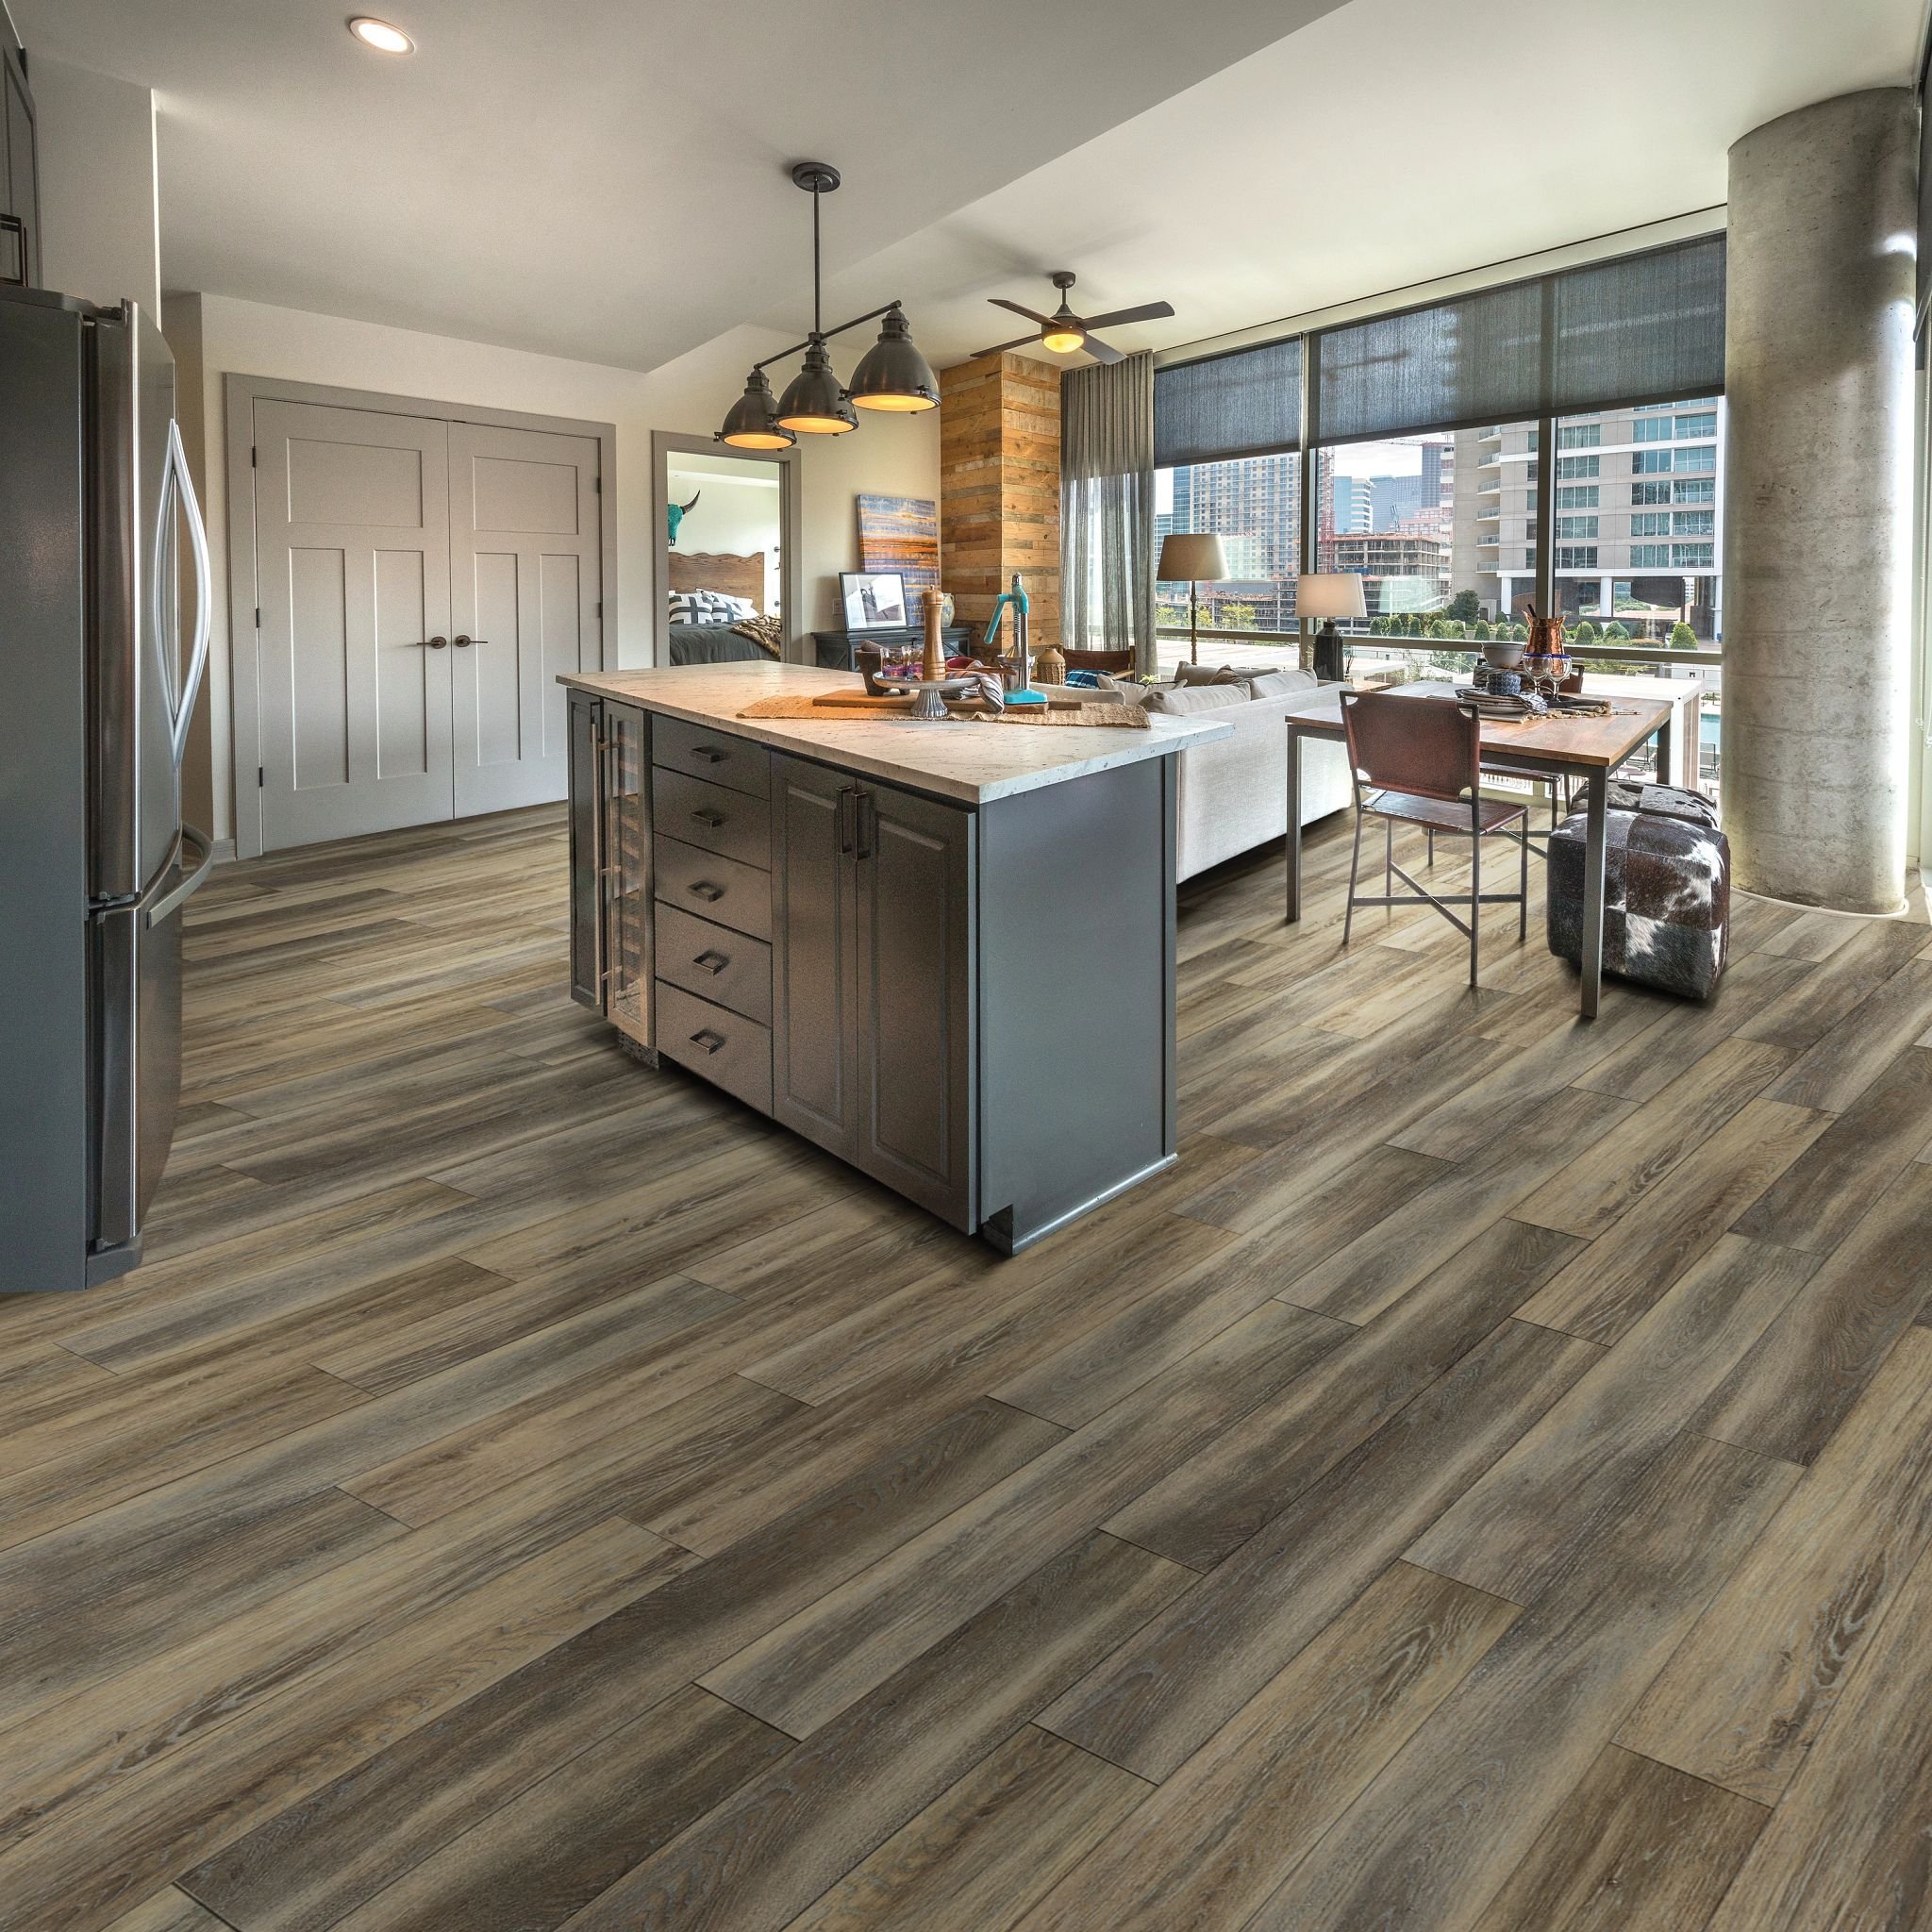 Kitchen with wood-look luxury vinyl flooring from 180 Degree Floors in the Nashville, TN area